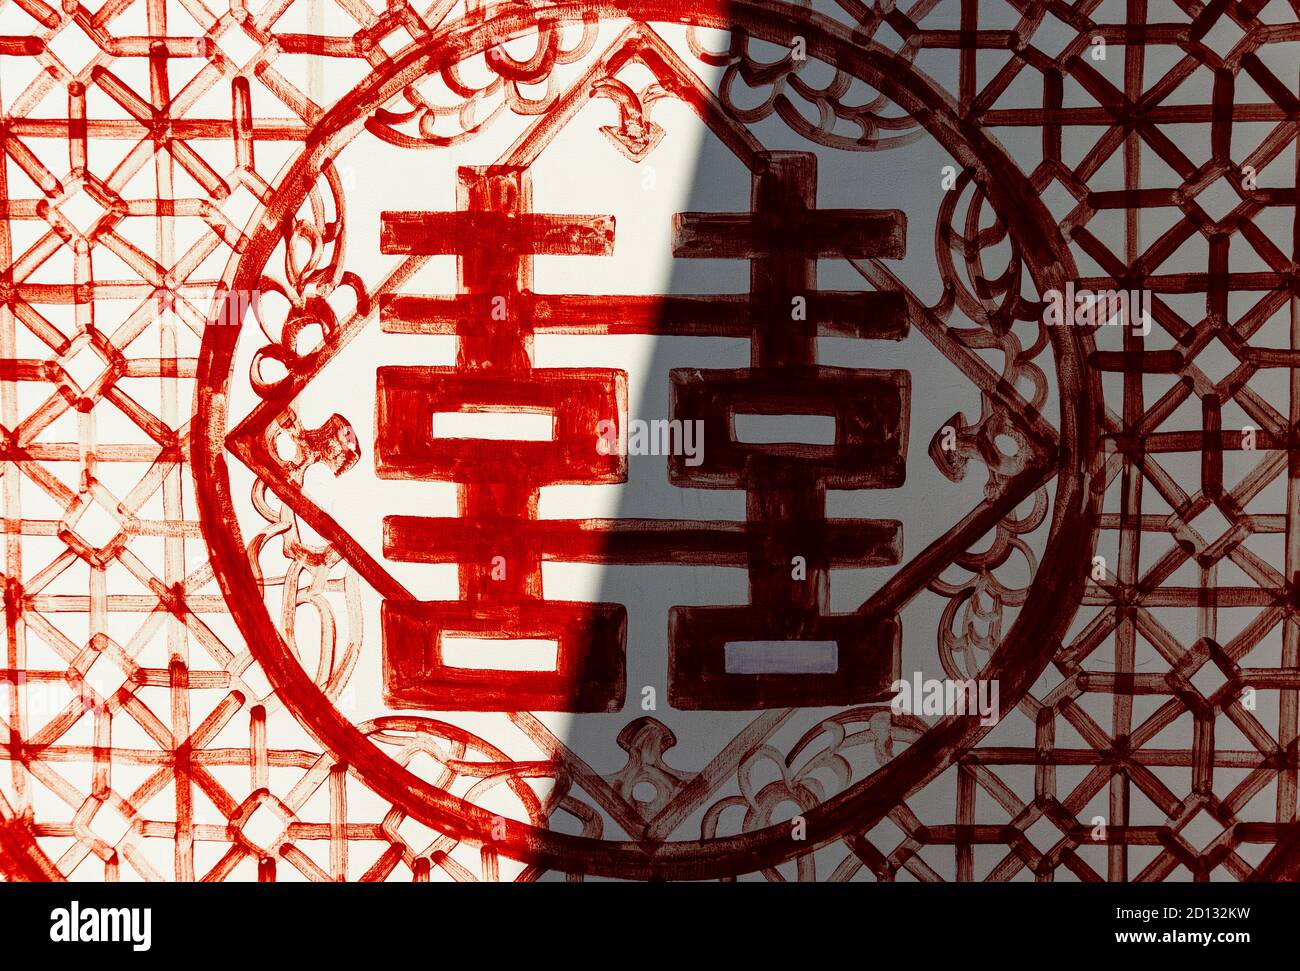 Des ombres coupent les caractères chinois pour « Double bonheur » Banque D'Images